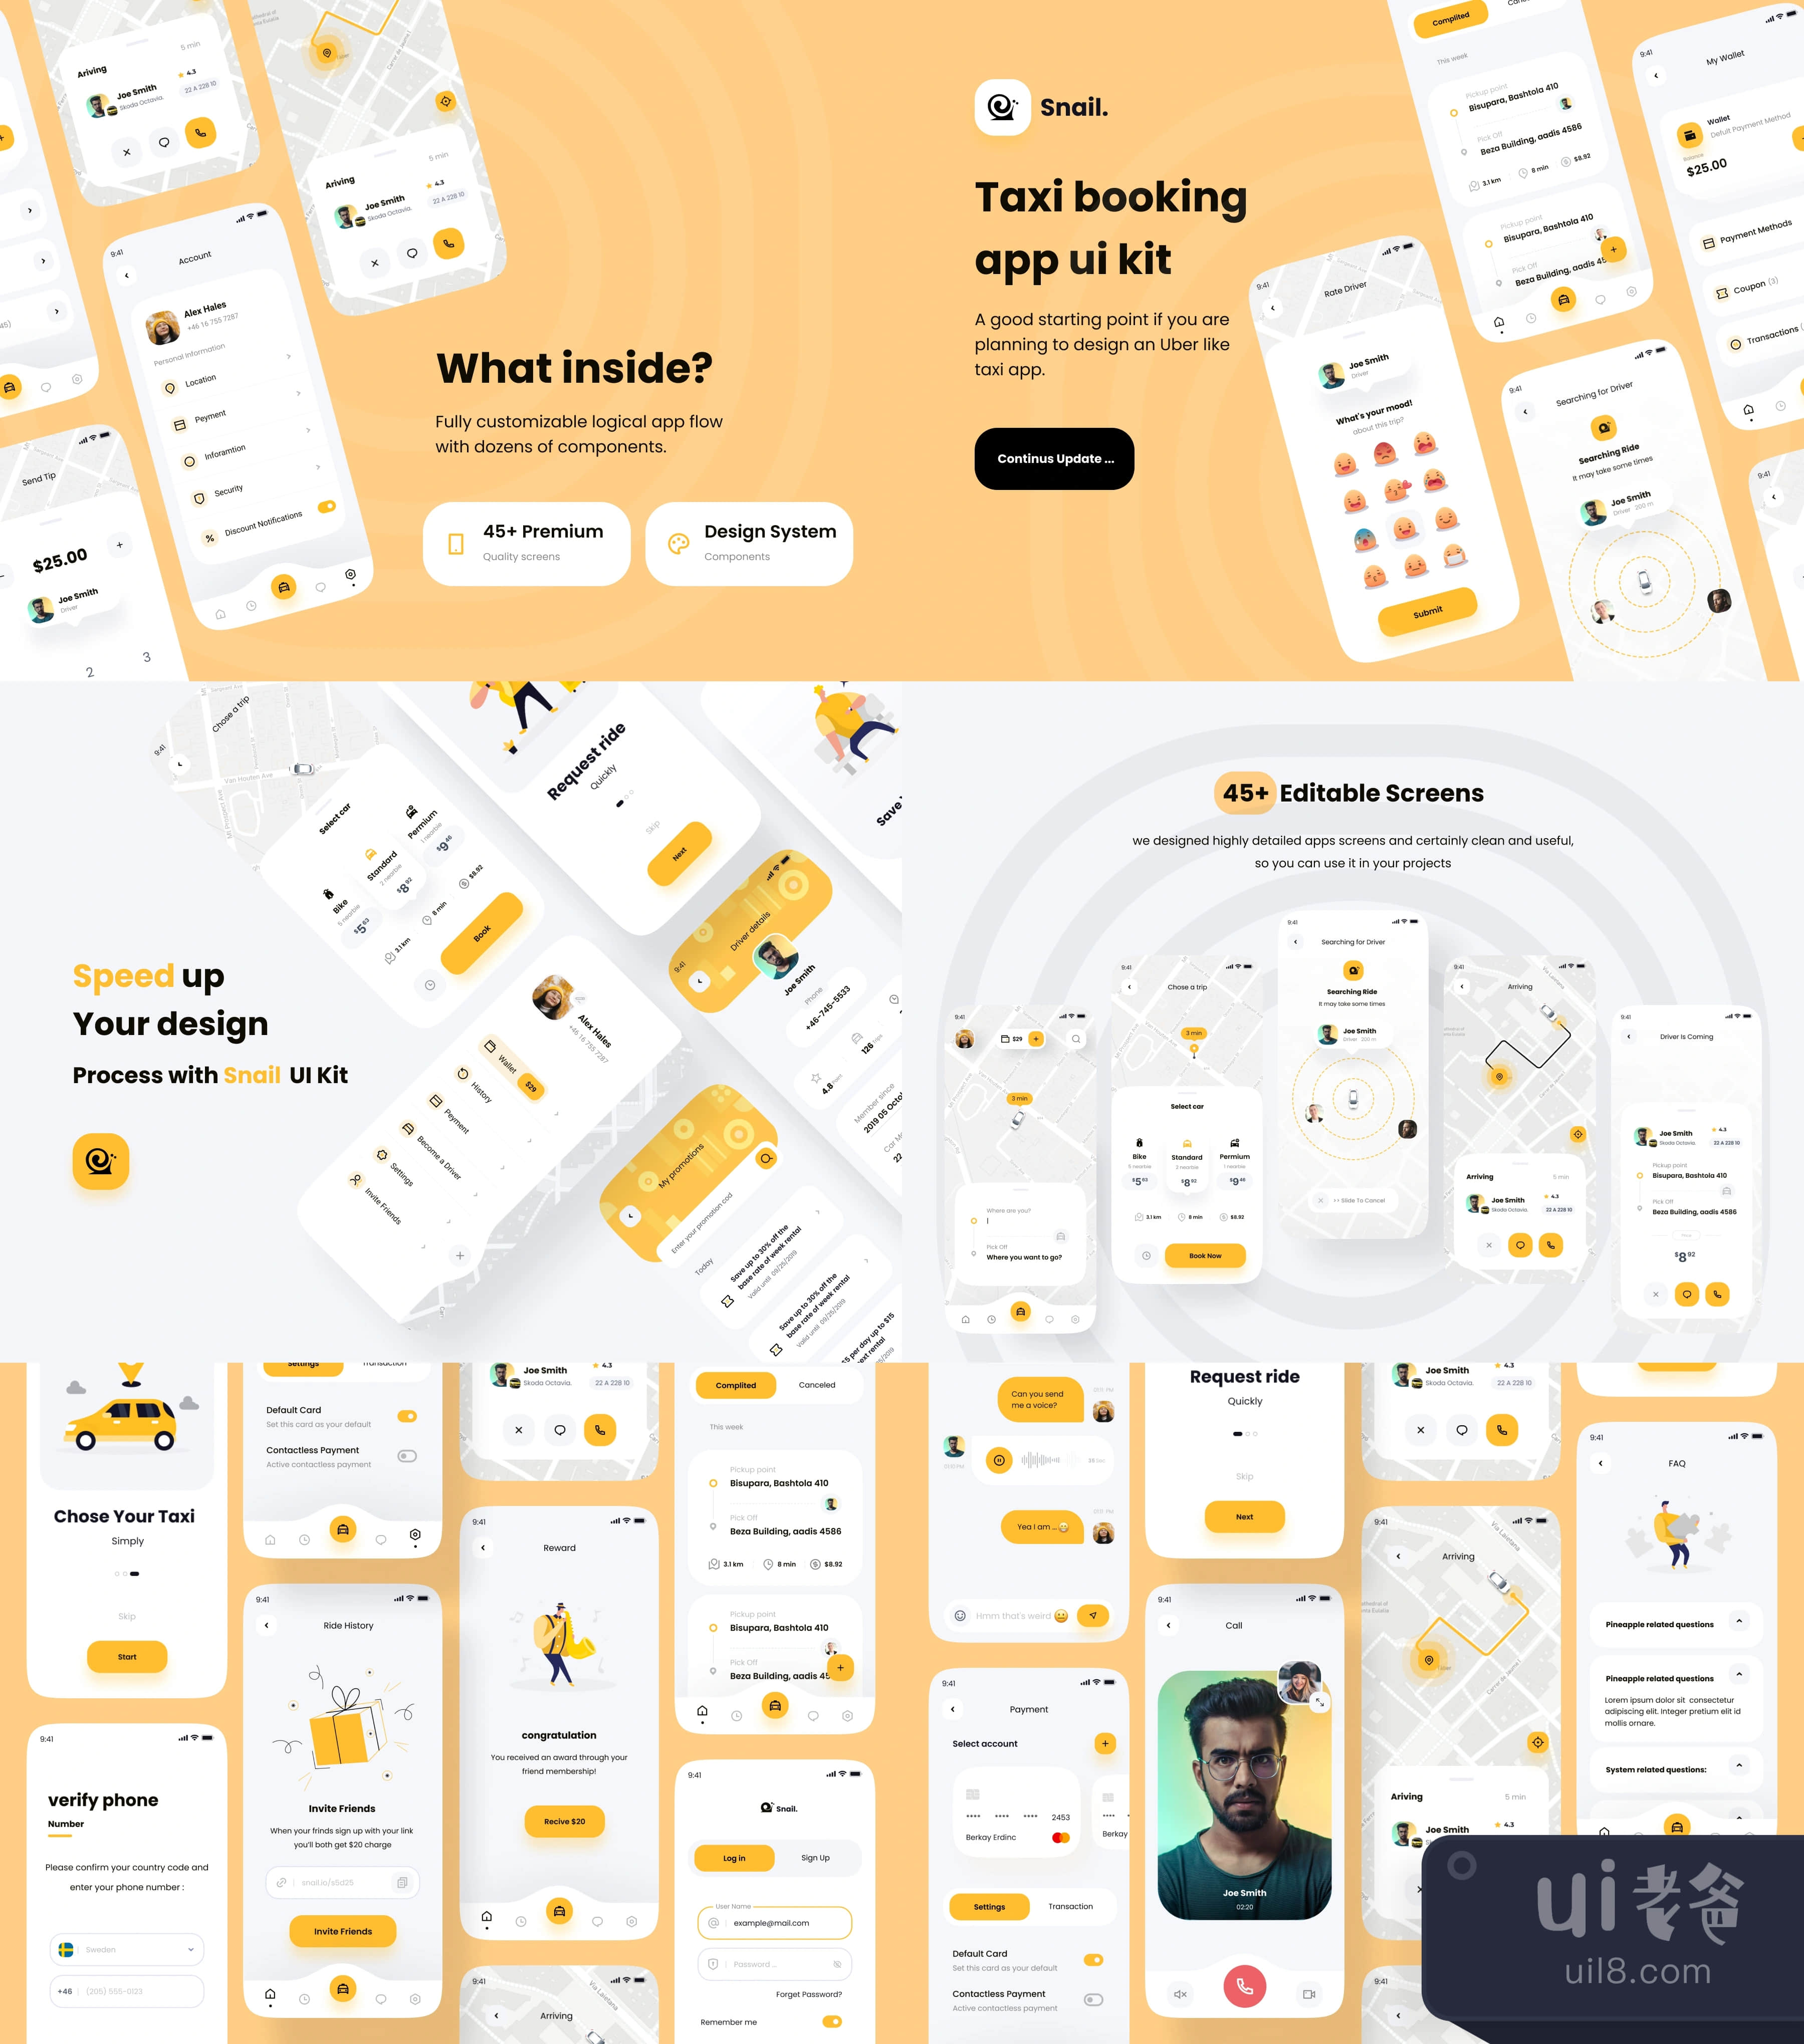 蜗牛出租车预订应用UI套件 (Snail Taxi booking app UI Kit)插图